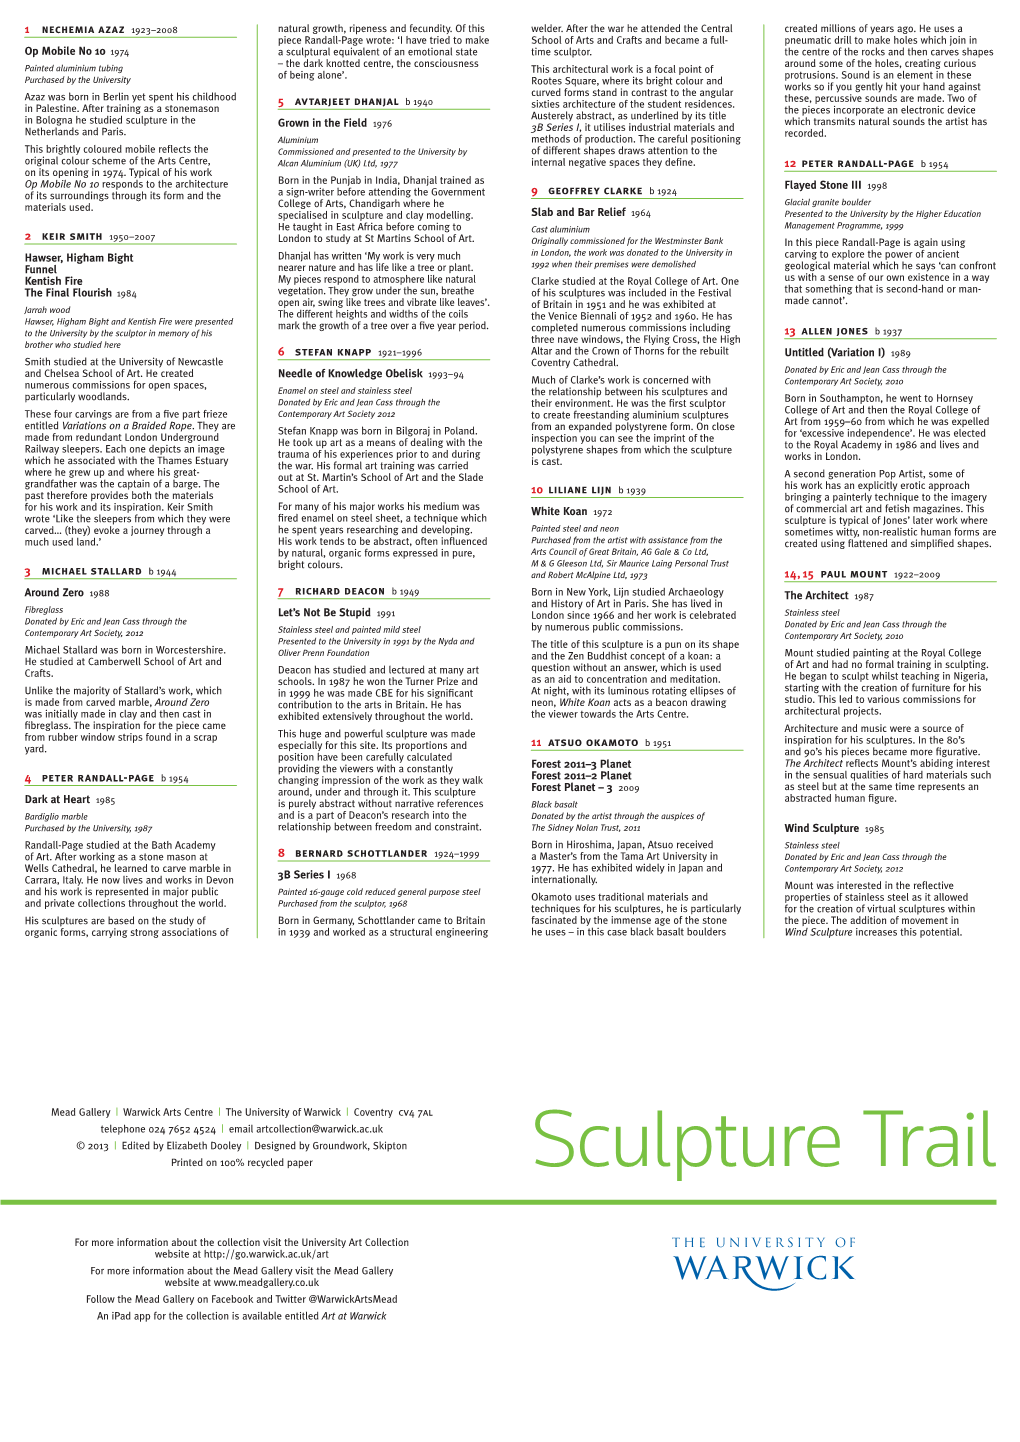 Sculpture Trail Leaflet